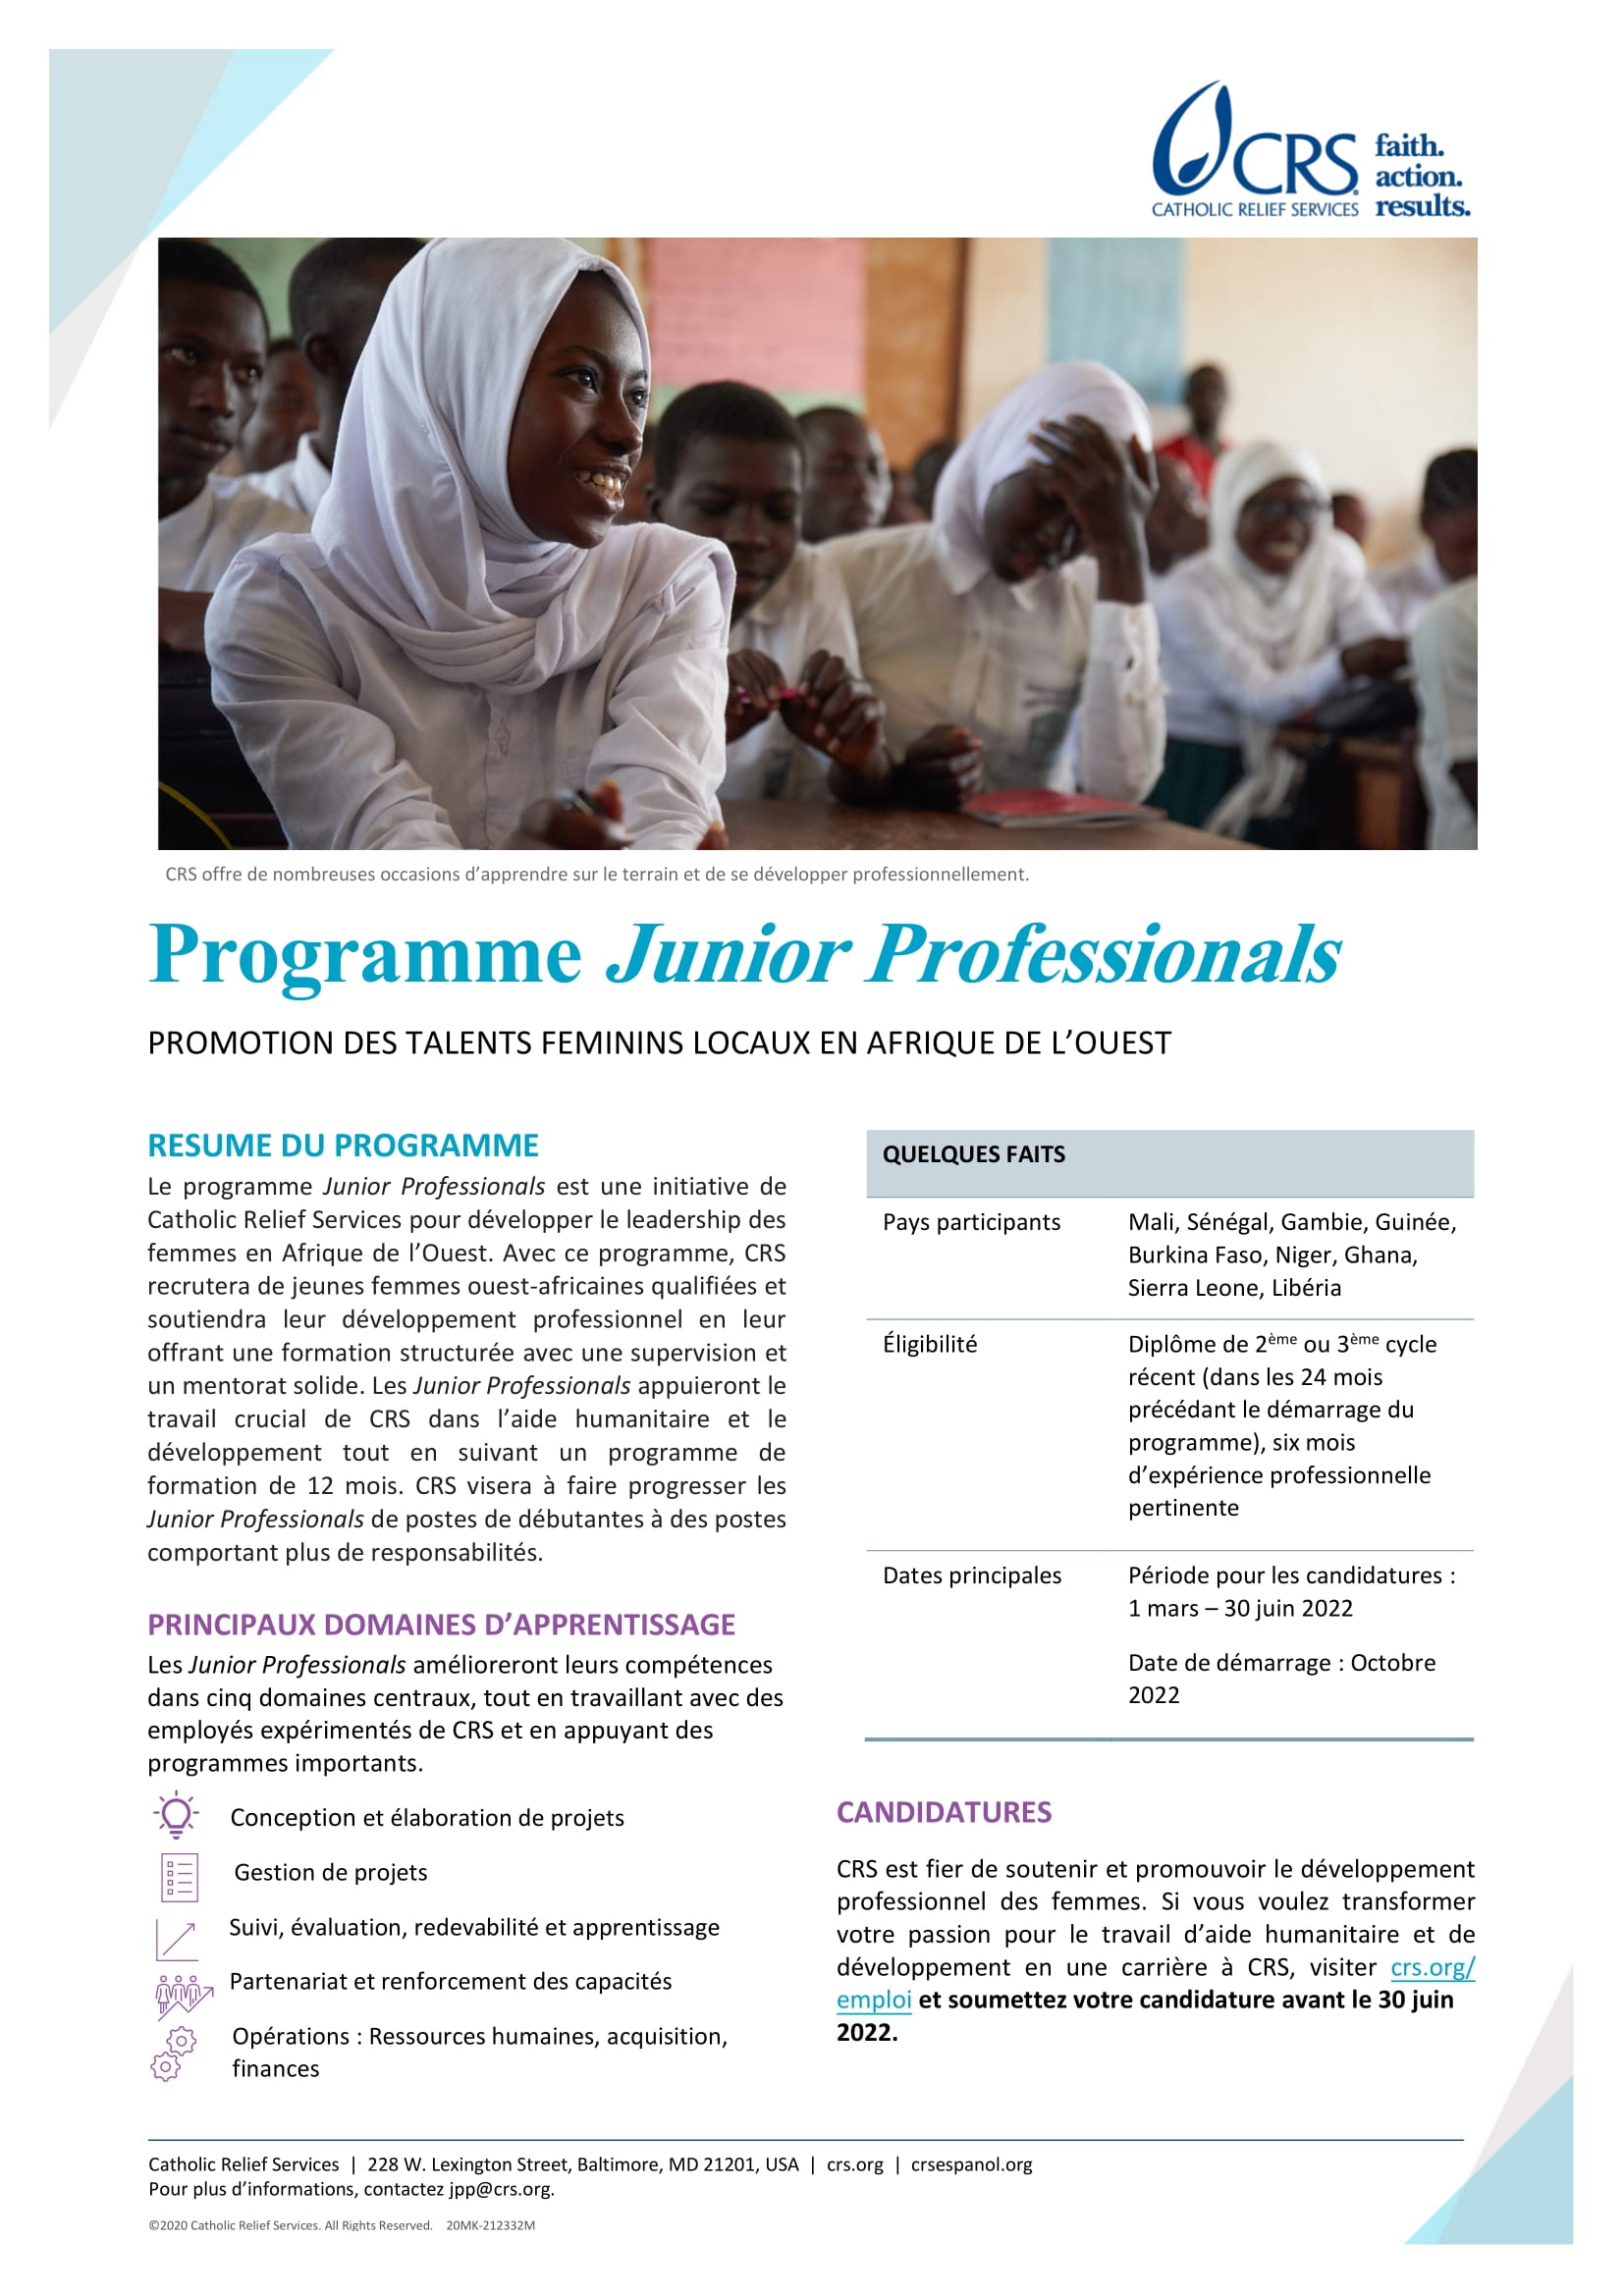 Programme Junior Professionals : Promotion des talents féminins locaux en Afrique de l’Ouest